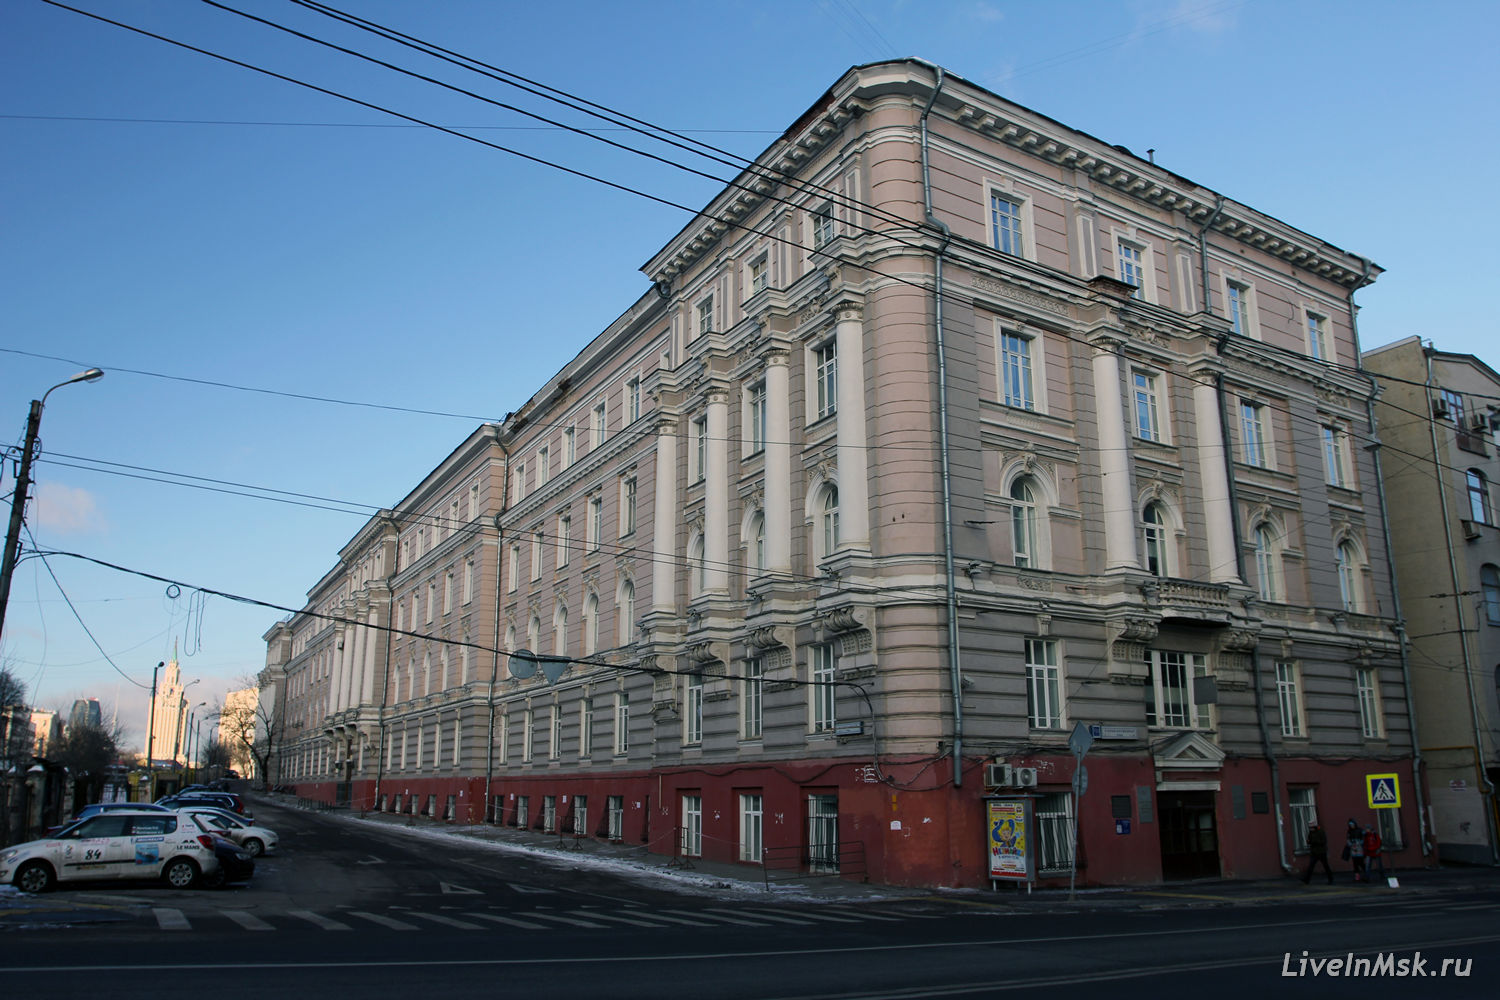 Дом правления Московско-Курской железной дороги, фото 2015 года